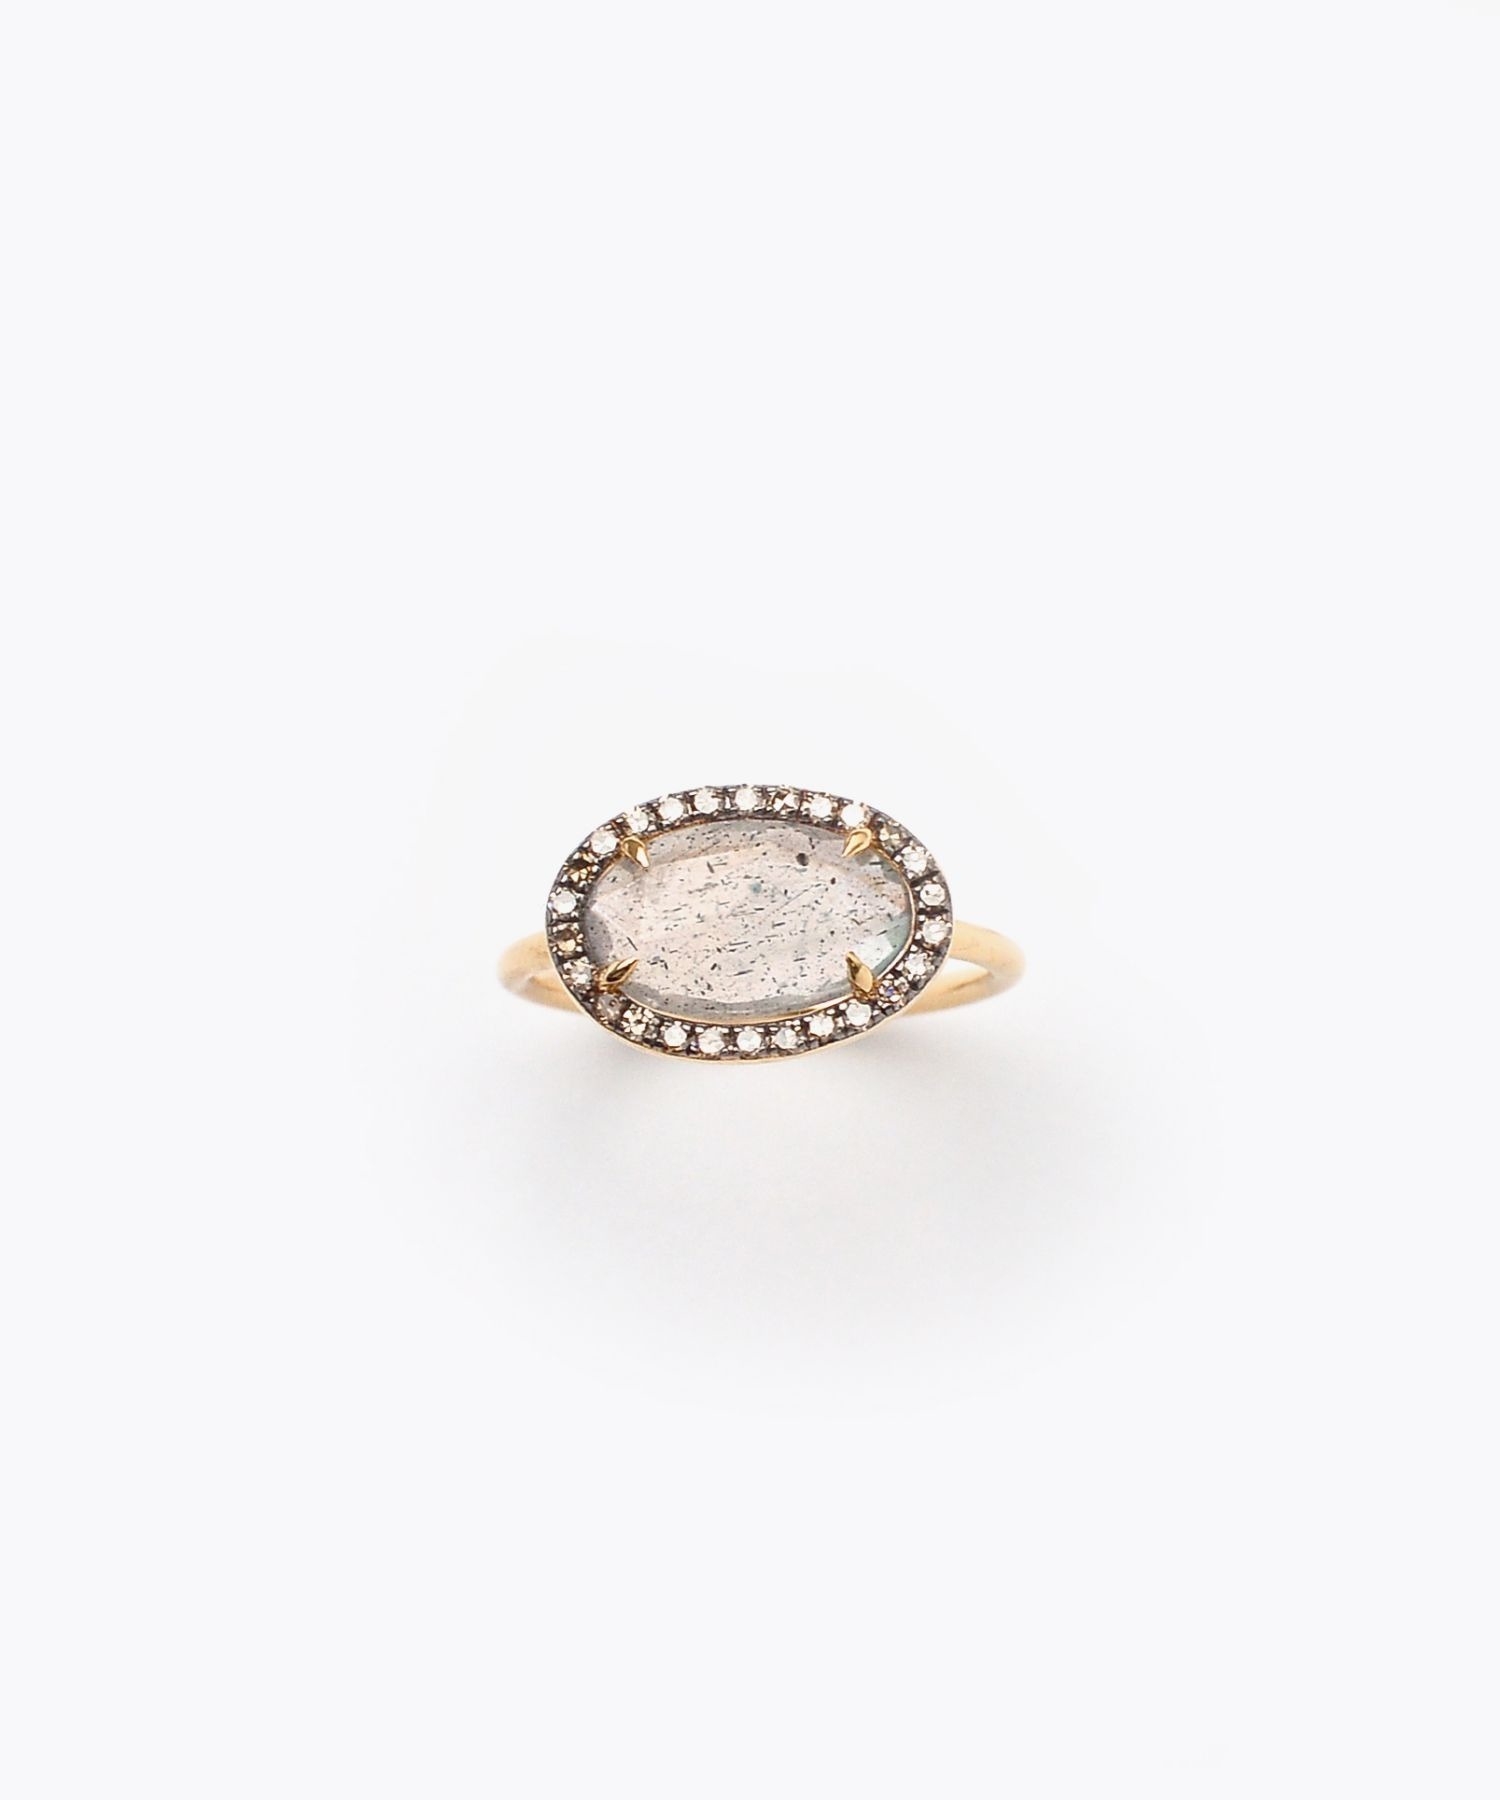 [elafonisi] medium labradorite with pave diamonds ring